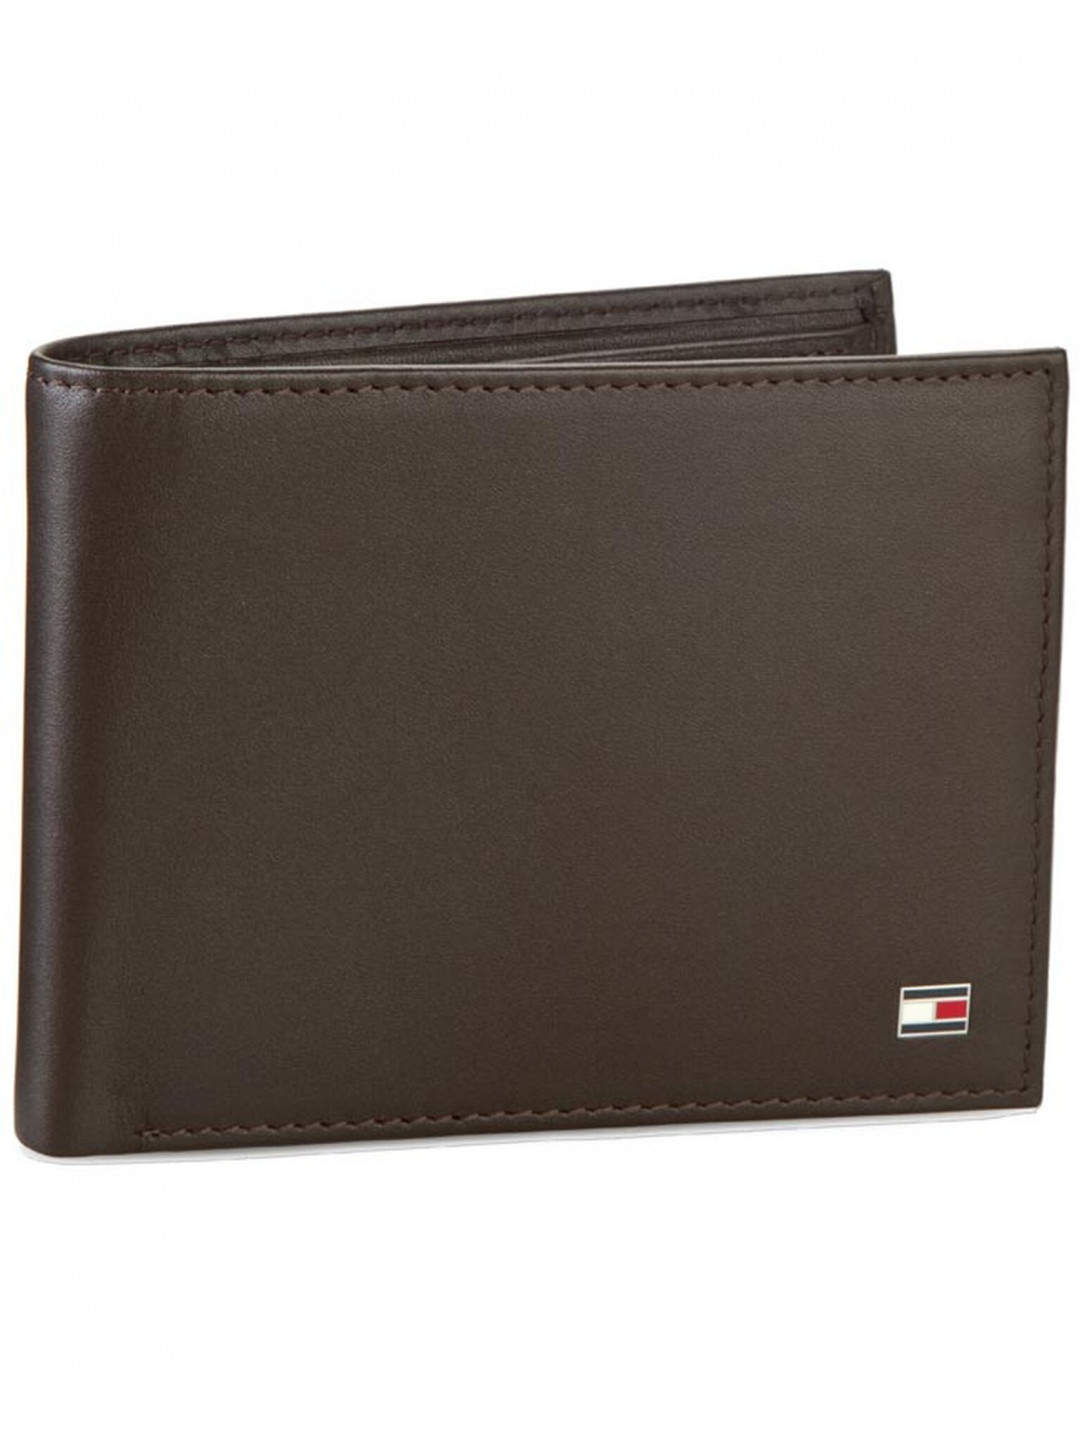 Tommy Hilfiger Velká pánská peněženka Eton Cc Flap And Coin Pocket AM0AM00652 83362 Hnědá